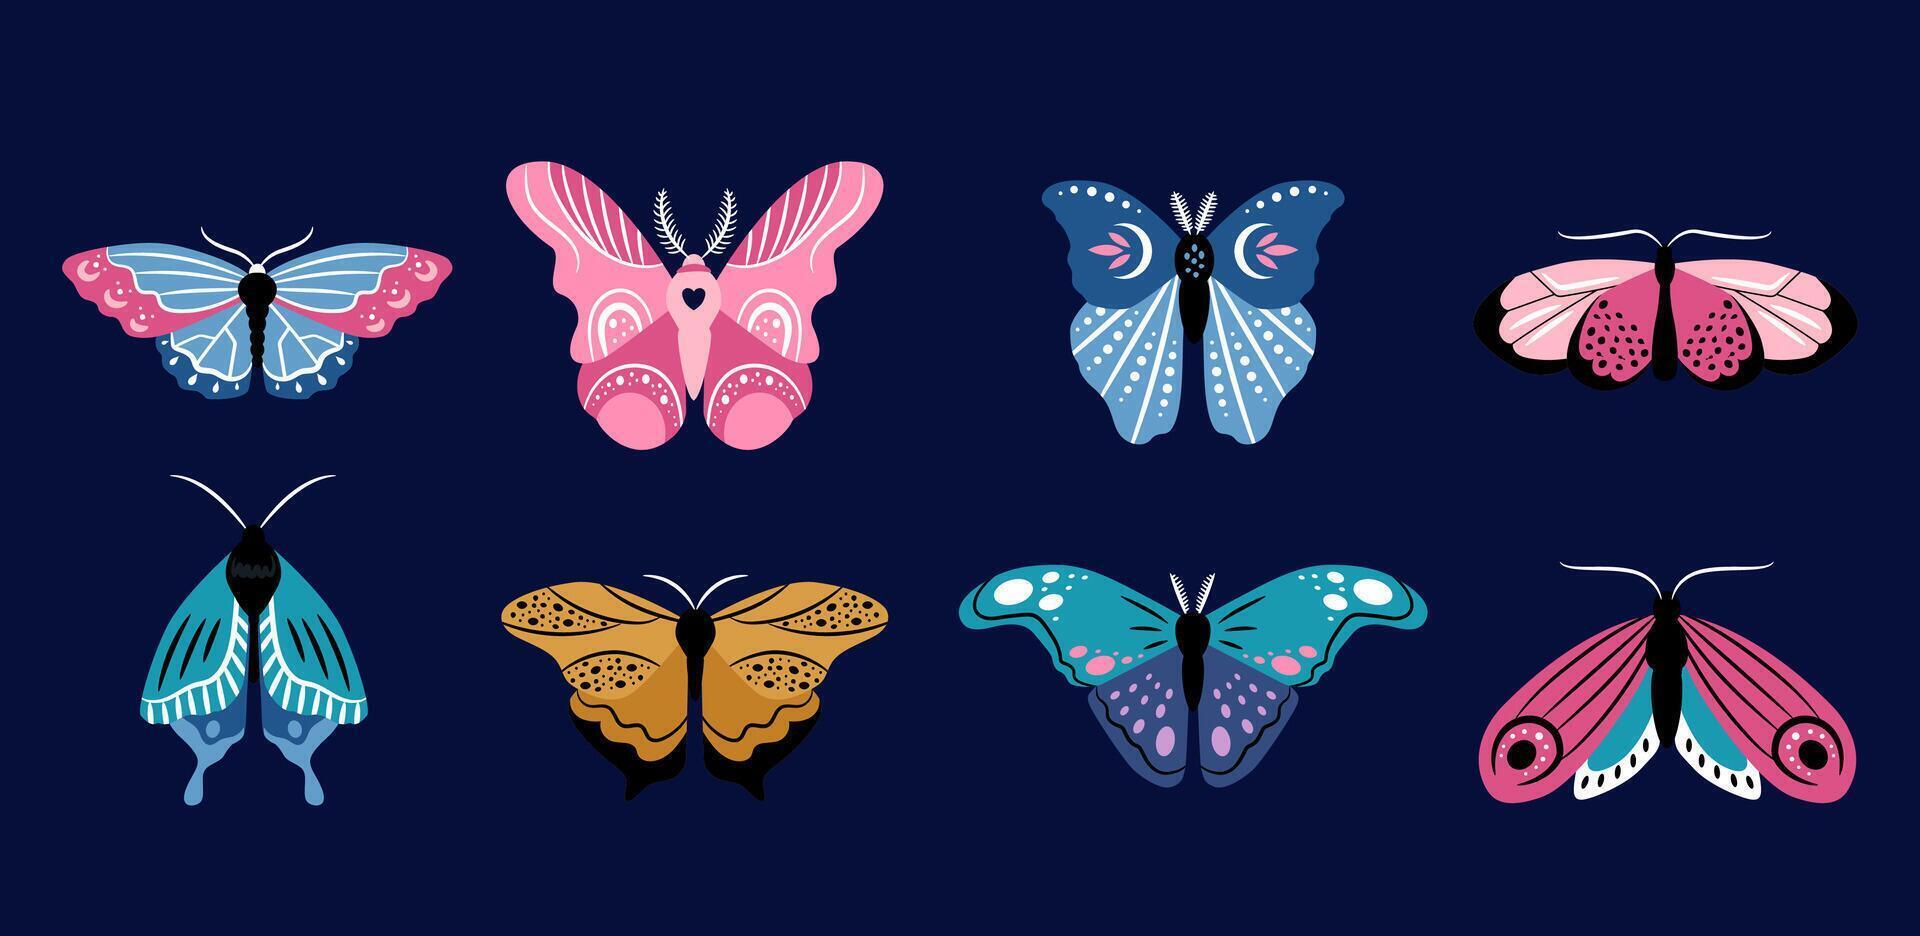 schön Schmetterlinge von anders Formen auf ein dunkel Blau Hintergrund. Vektor bunt einstellen von Abbildungen zum das Design von Verpackung, Karten, Muster.